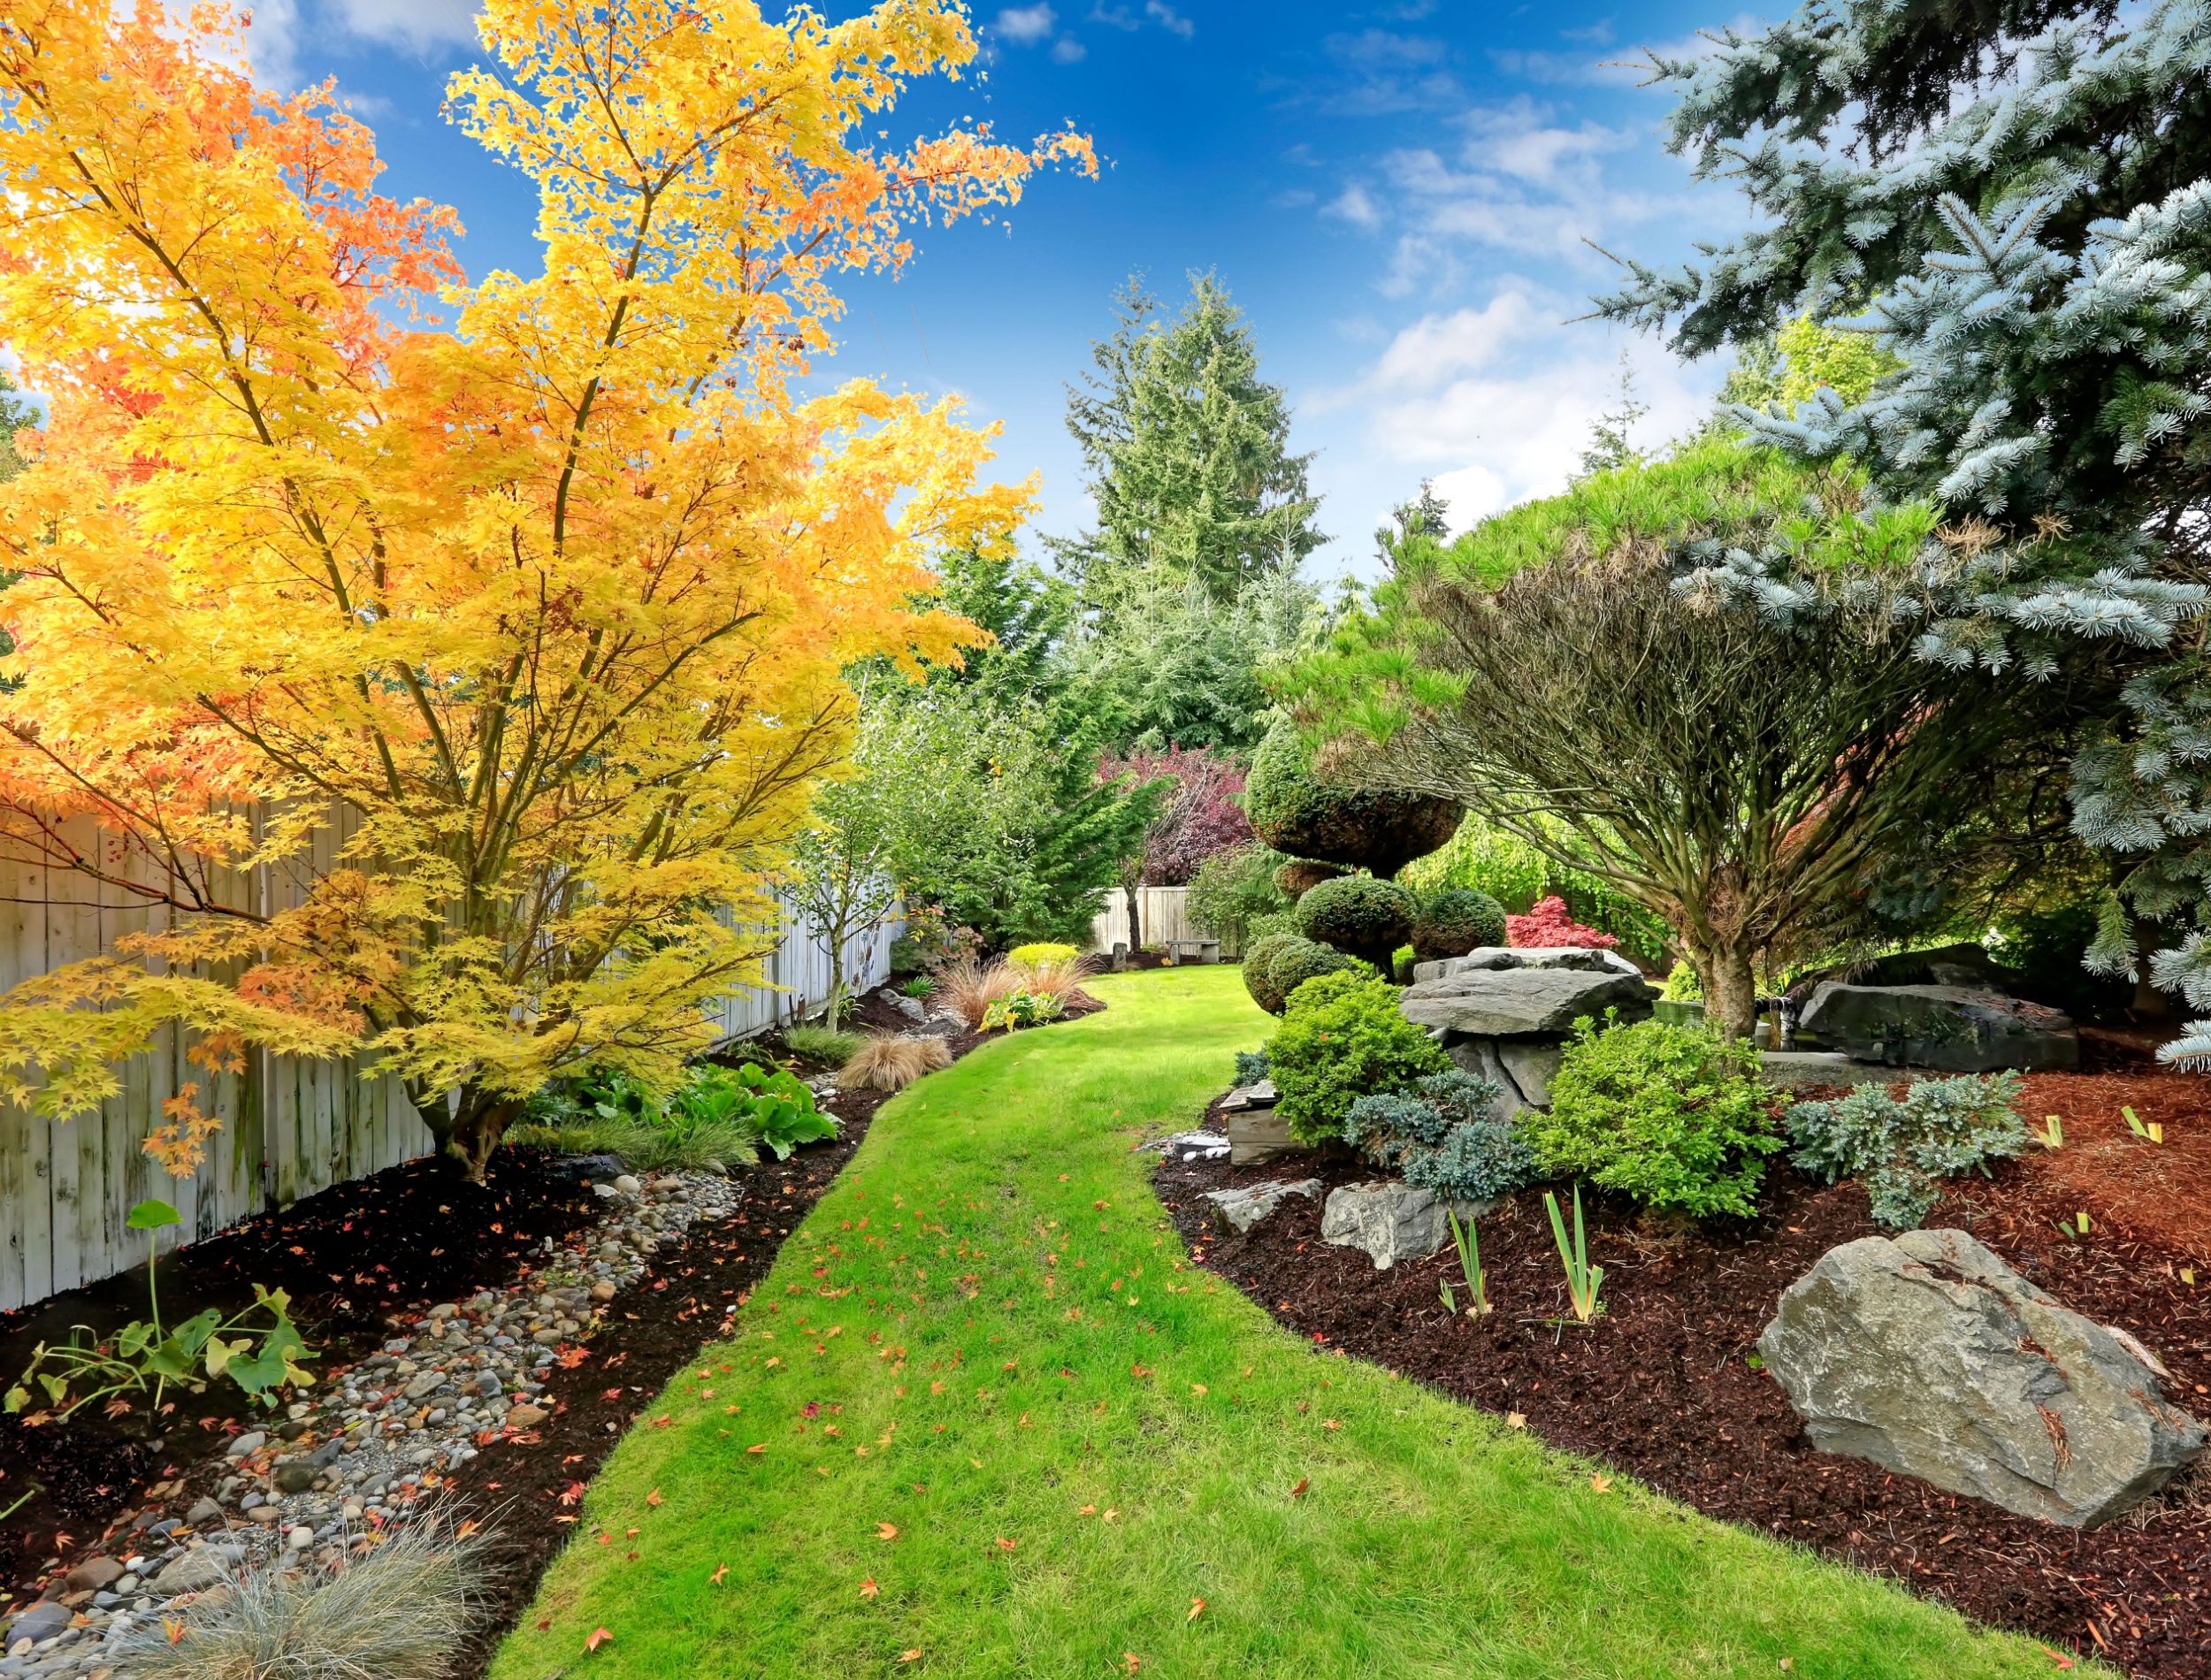 Beautiful colors in natural backyard landscaping